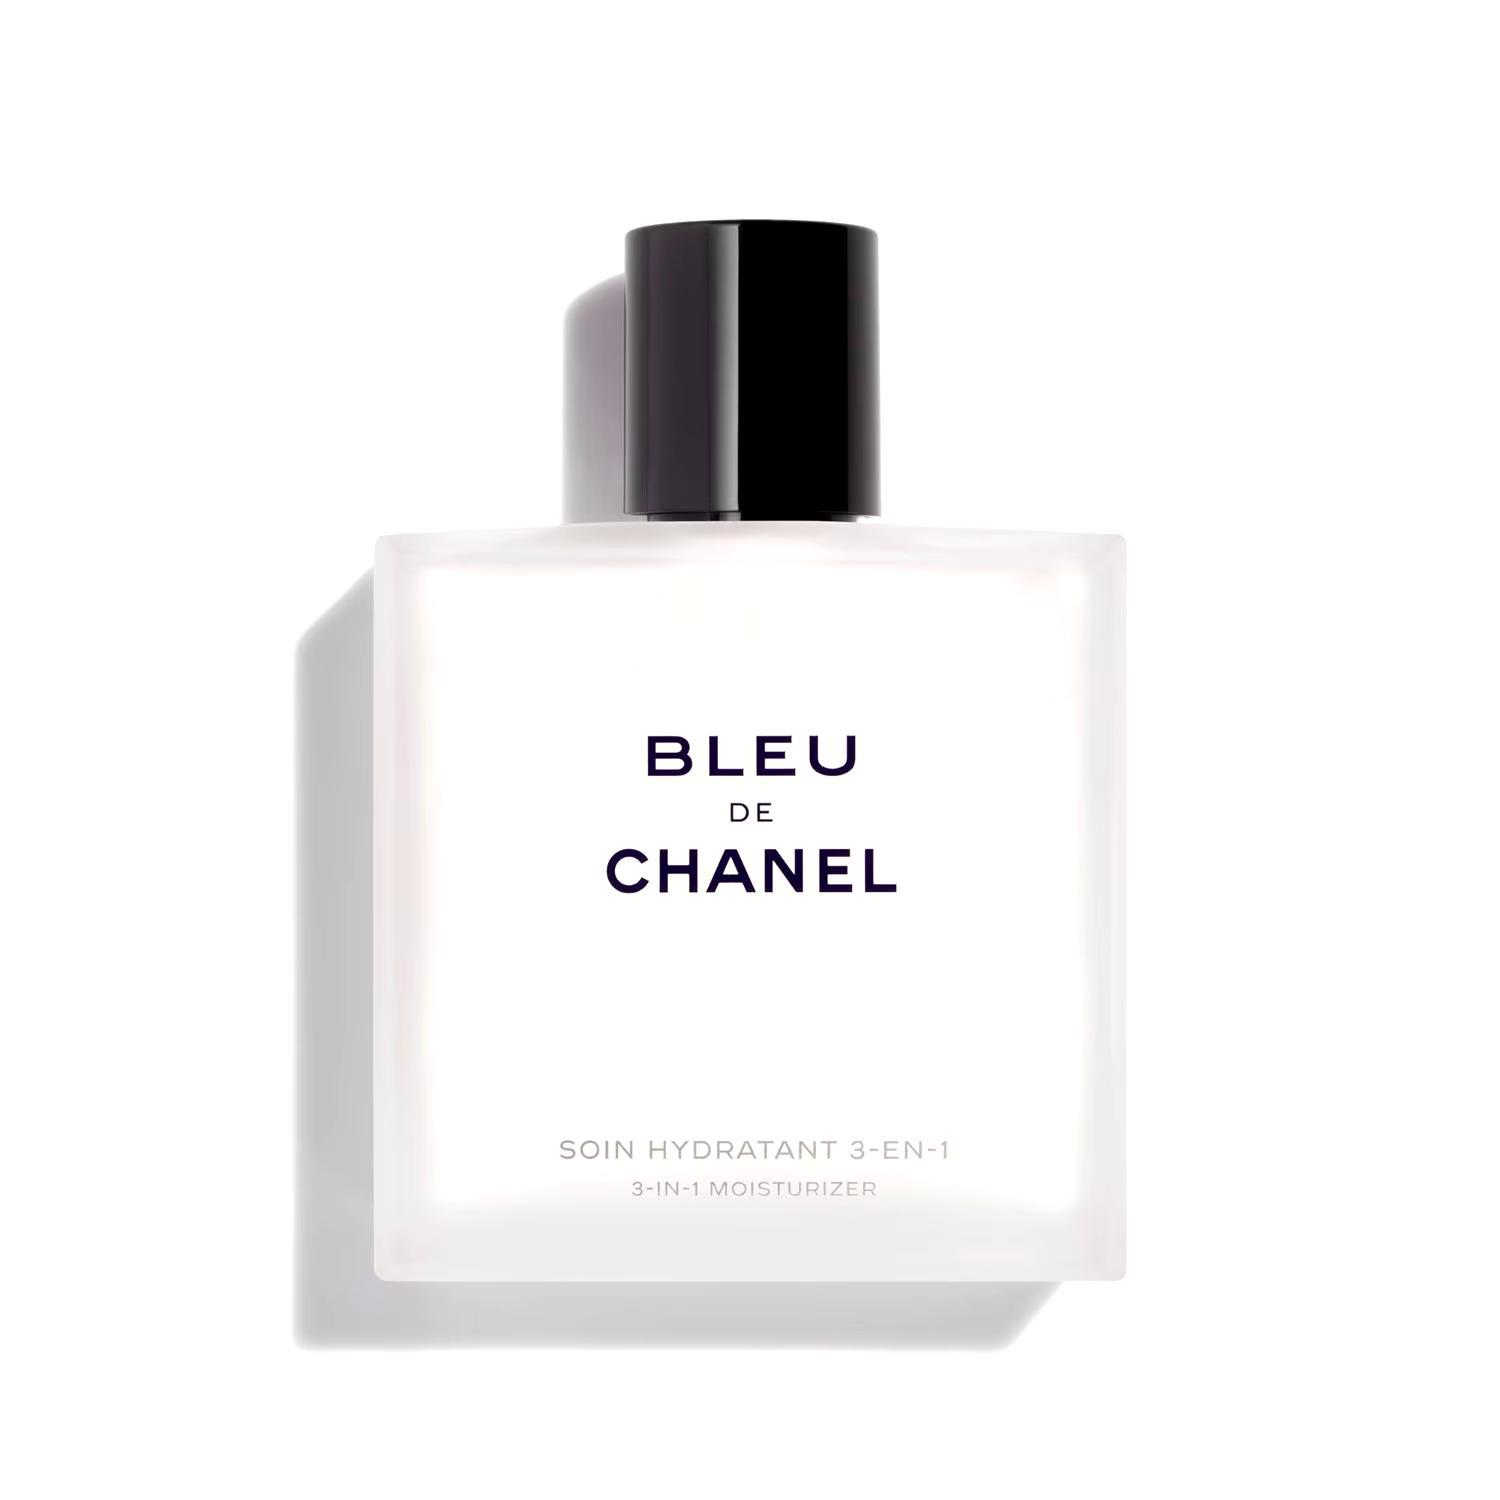 Chanel Bleu de Chanel 3-in-1 moisturizer